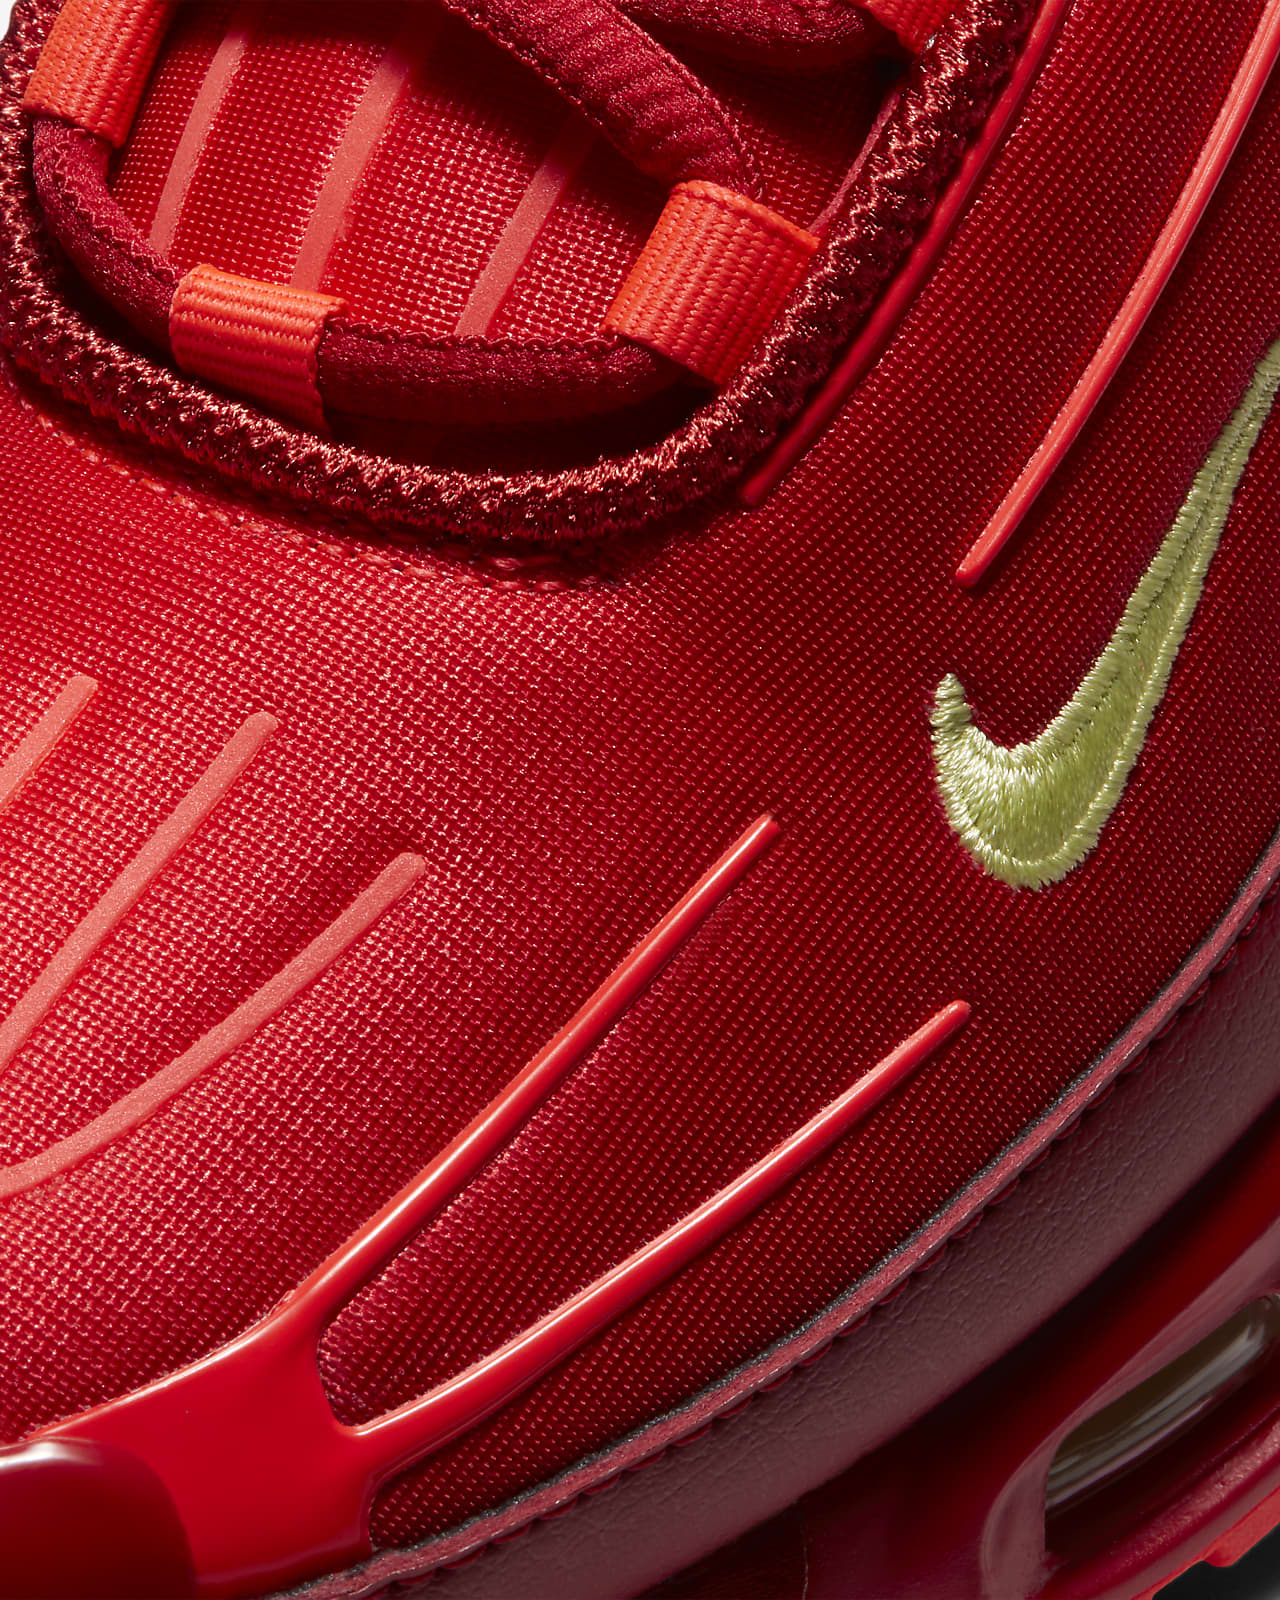 Nike Air Max Plus 3 Men's Shoes. Nike LU